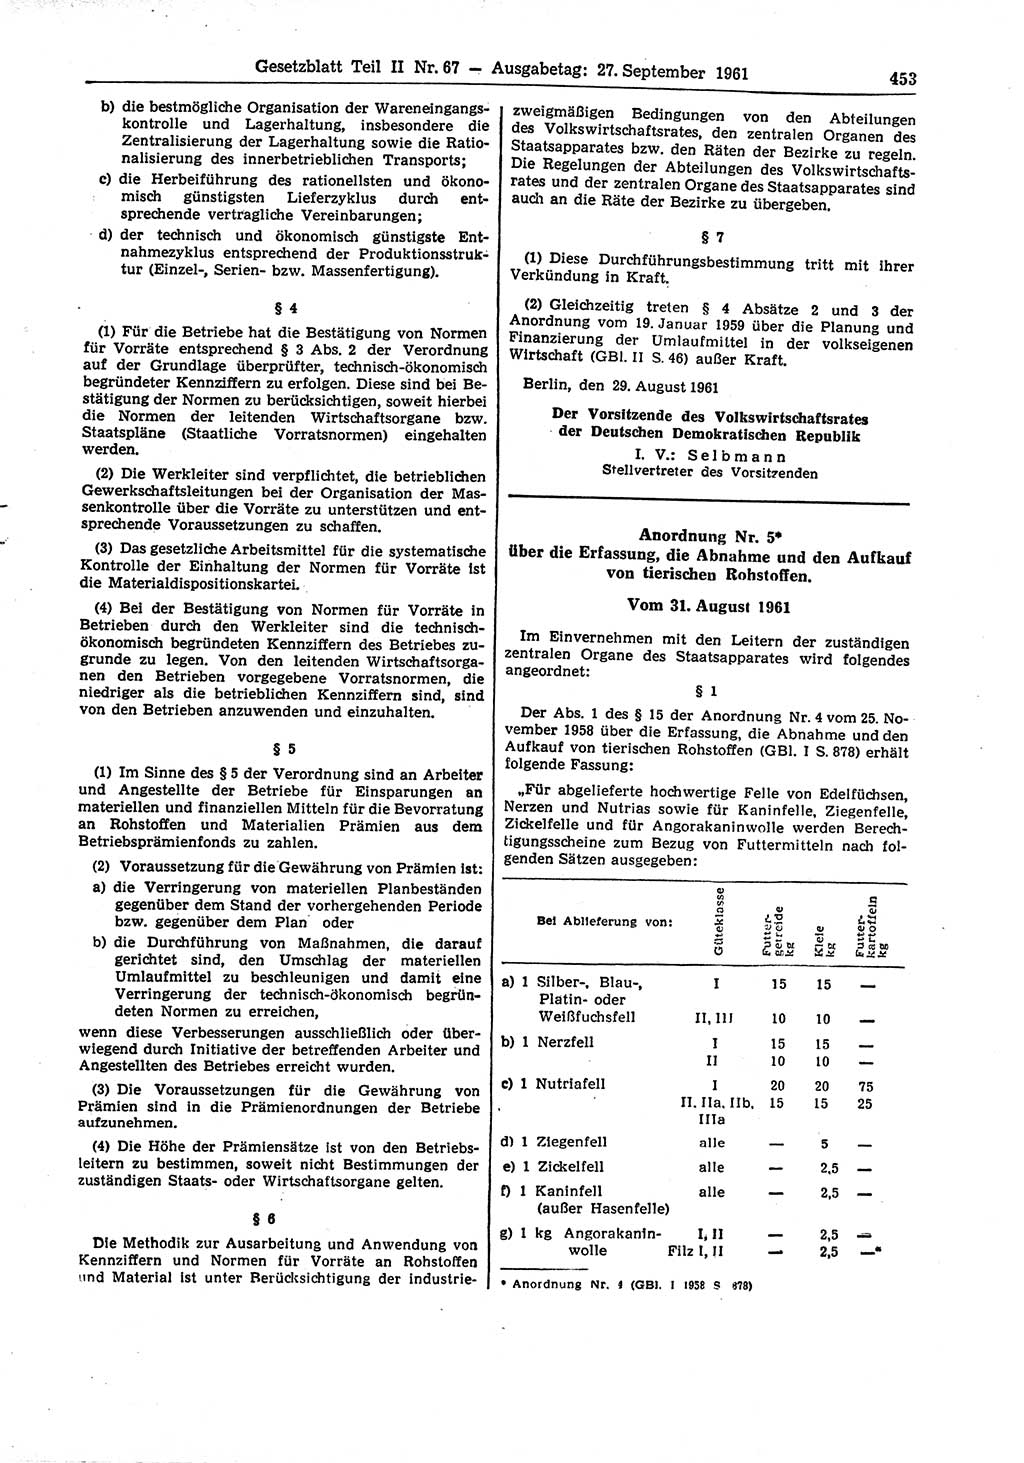 Gesetzblatt (GBl.) der Deutschen Demokratischen Republik (DDR) Teil ⅠⅠ 1961, Seite 453 (GBl. DDR ⅠⅠ 1961, S. 453)